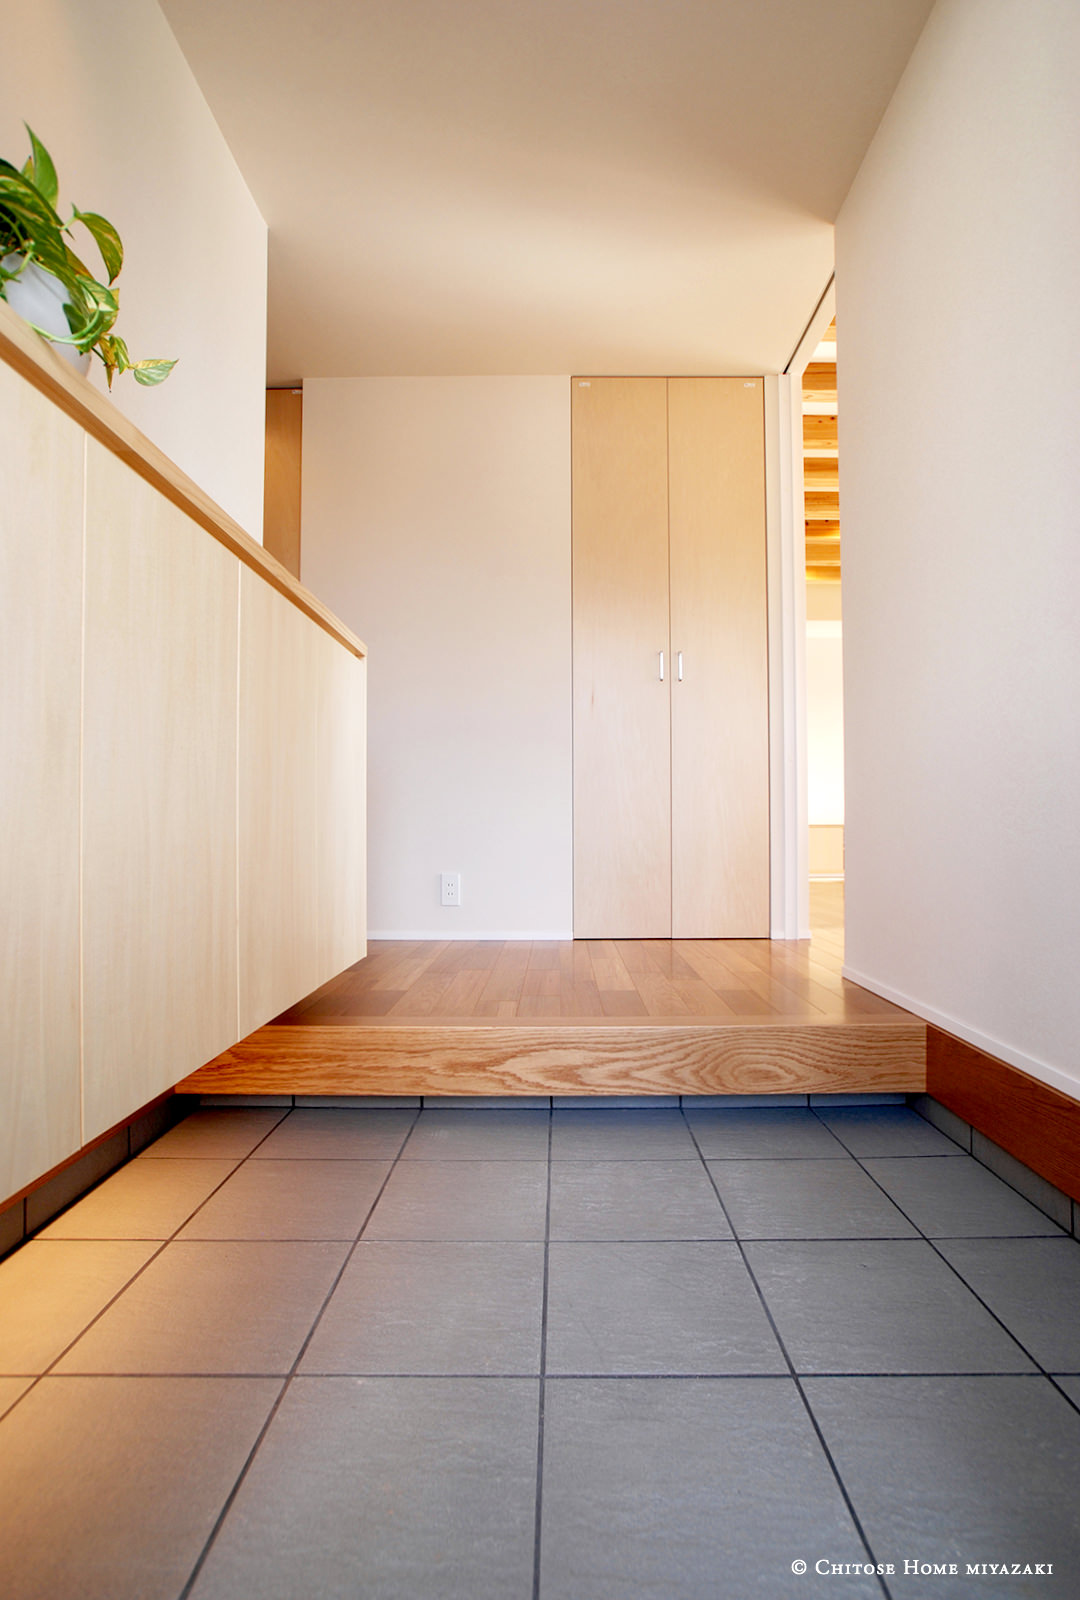 玄関の土間に貼るタイルは、割り付けに注意することが肝要。３０センチ角の単純なタイルをいかにきれいに見せるかは、設計段階の検討が必要。